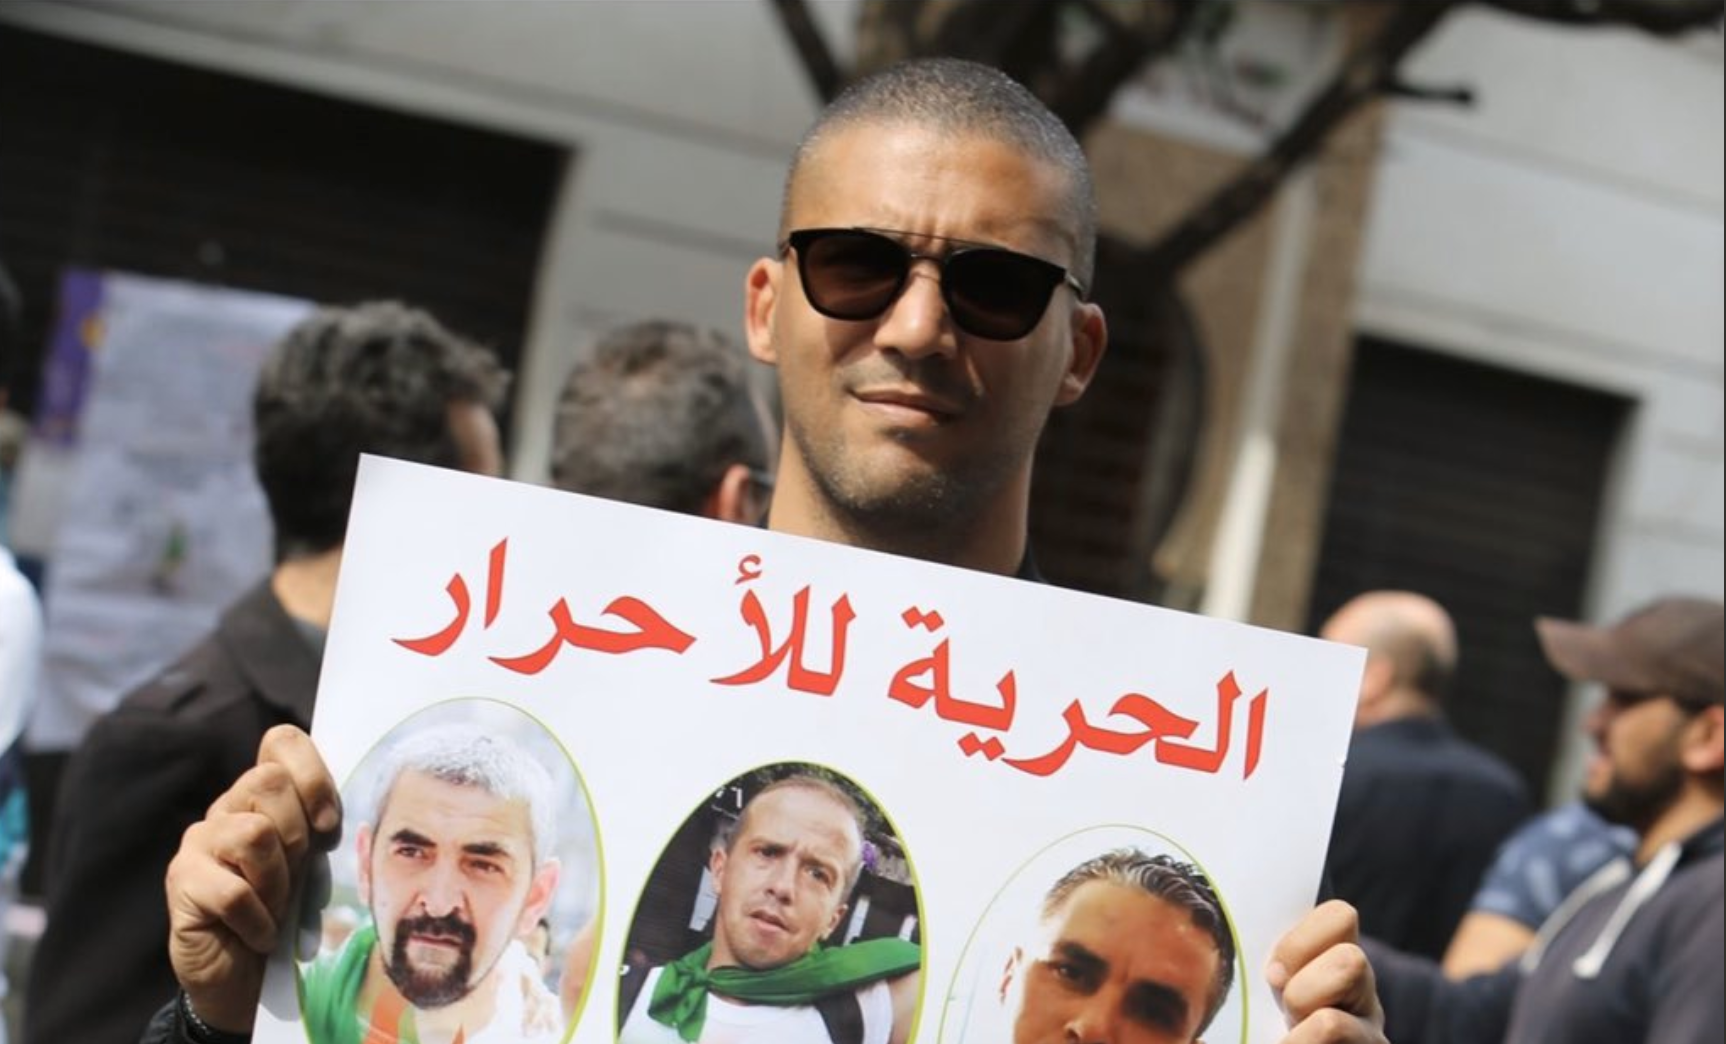  Le procès était considéré comme un test pour la liberté d’information et d’expression en Algérie.